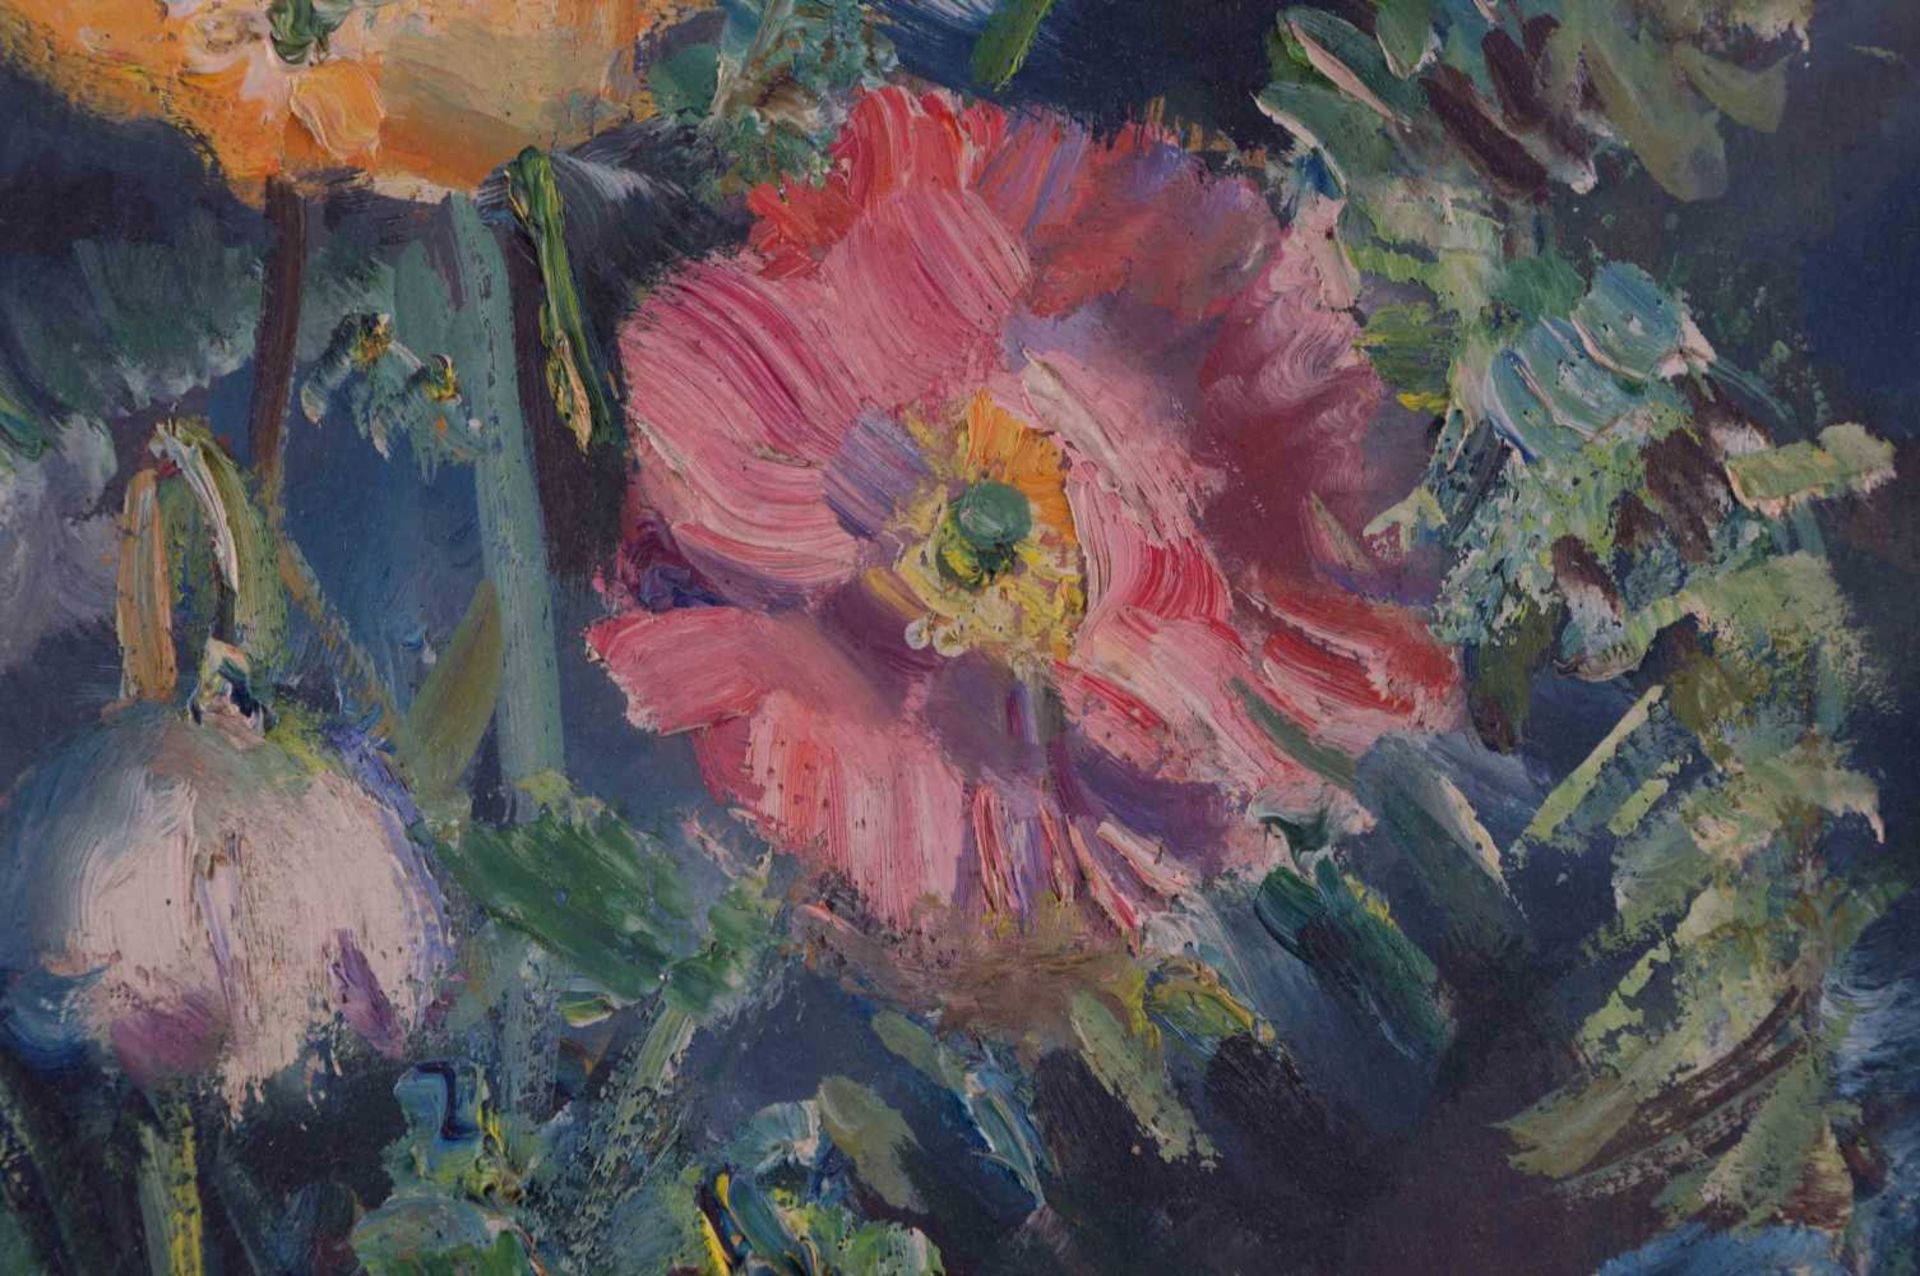 unbekannter Künstler des 19./20. Jhd. "Blumenstillleben" Gemälde Öl/Karton, 49 cm x 41 cm, rechts - Bild 5 aus 7